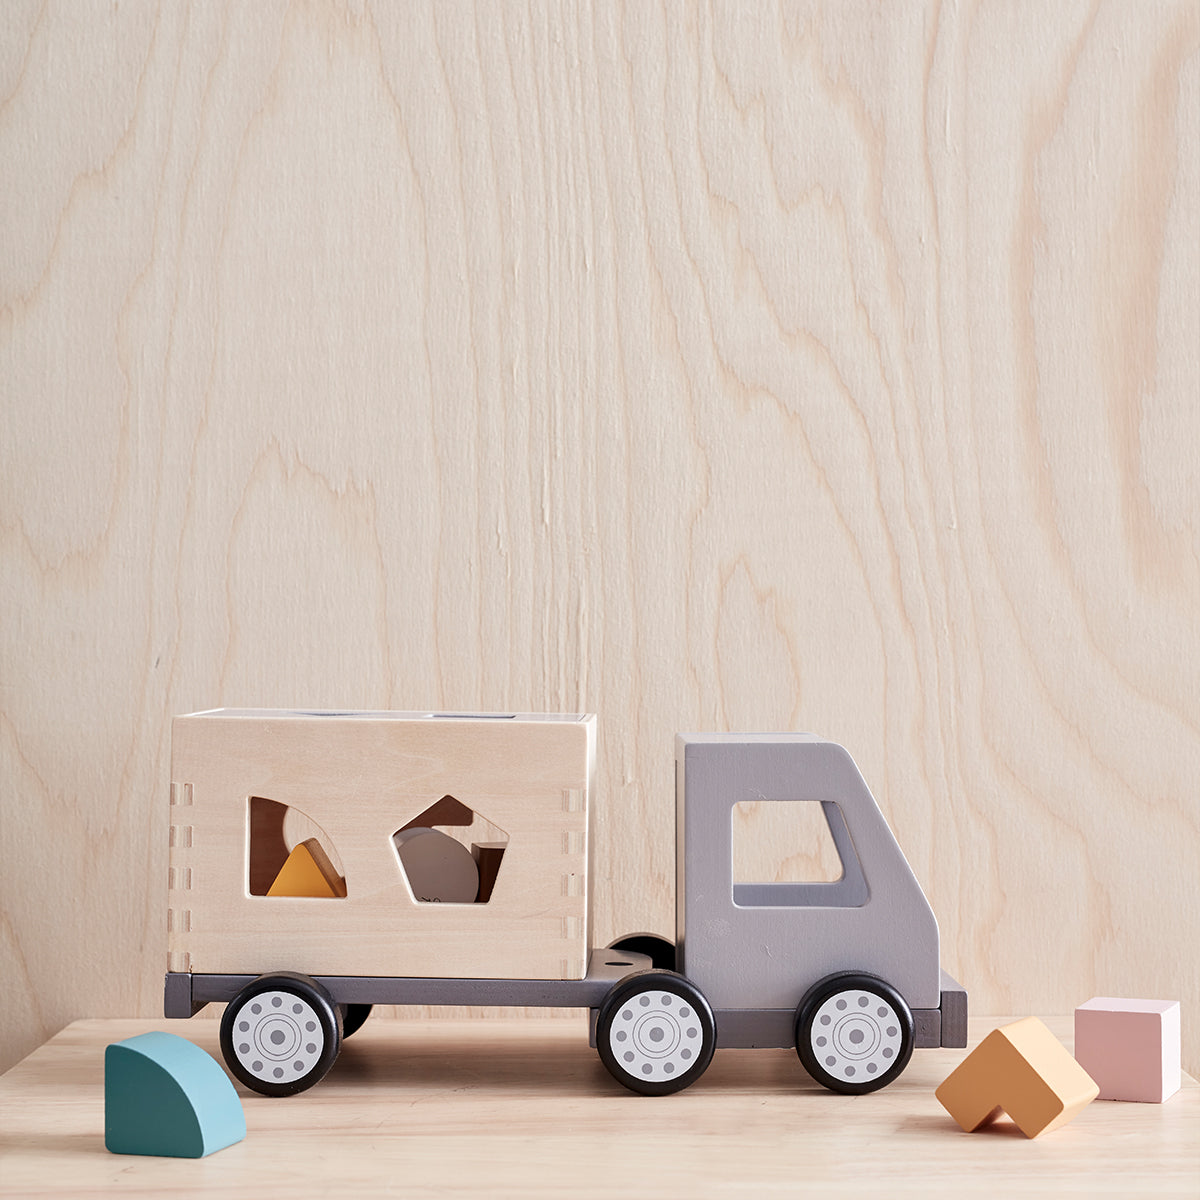 De Kid's Concept sorteertruck is een speelgoed vrachtwagen en vormenstoof in één. Deze leuke combi zorgt voor uren speelplezier bij jouw kleintje! Een vormenstoof is daarnaast ook leerzaam en de houten speelgoedauto ziet er heel stoer uit! VanZus.